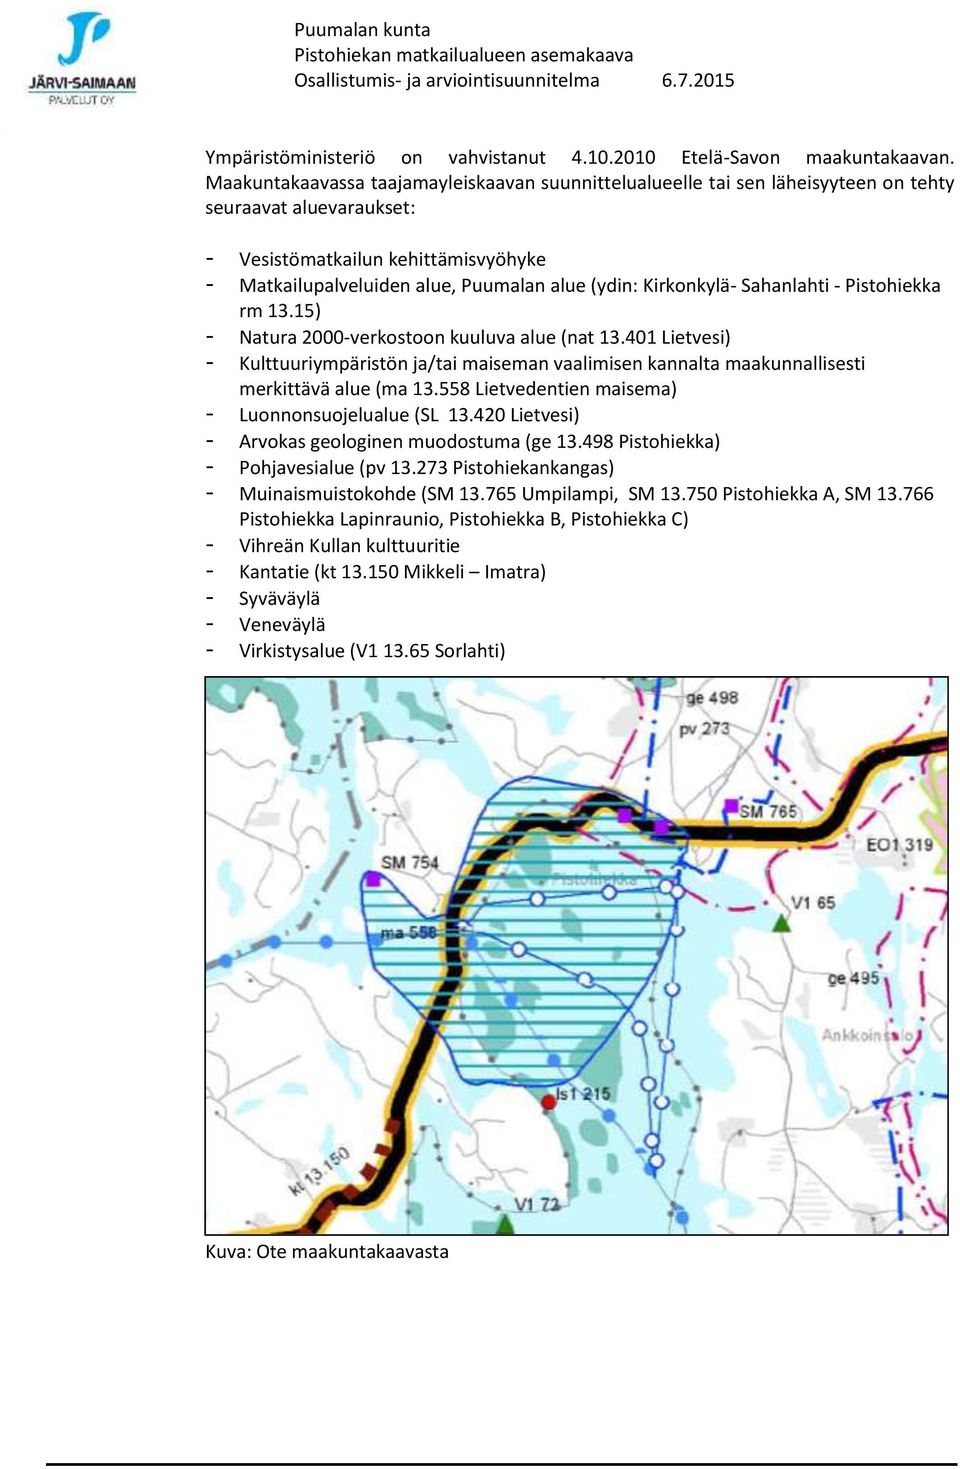 Kirkonkylä- Sahanlahti - Pistohiekka rm 13.15) - Natura 2000-verkostoon kuuluva alue (nat 13.